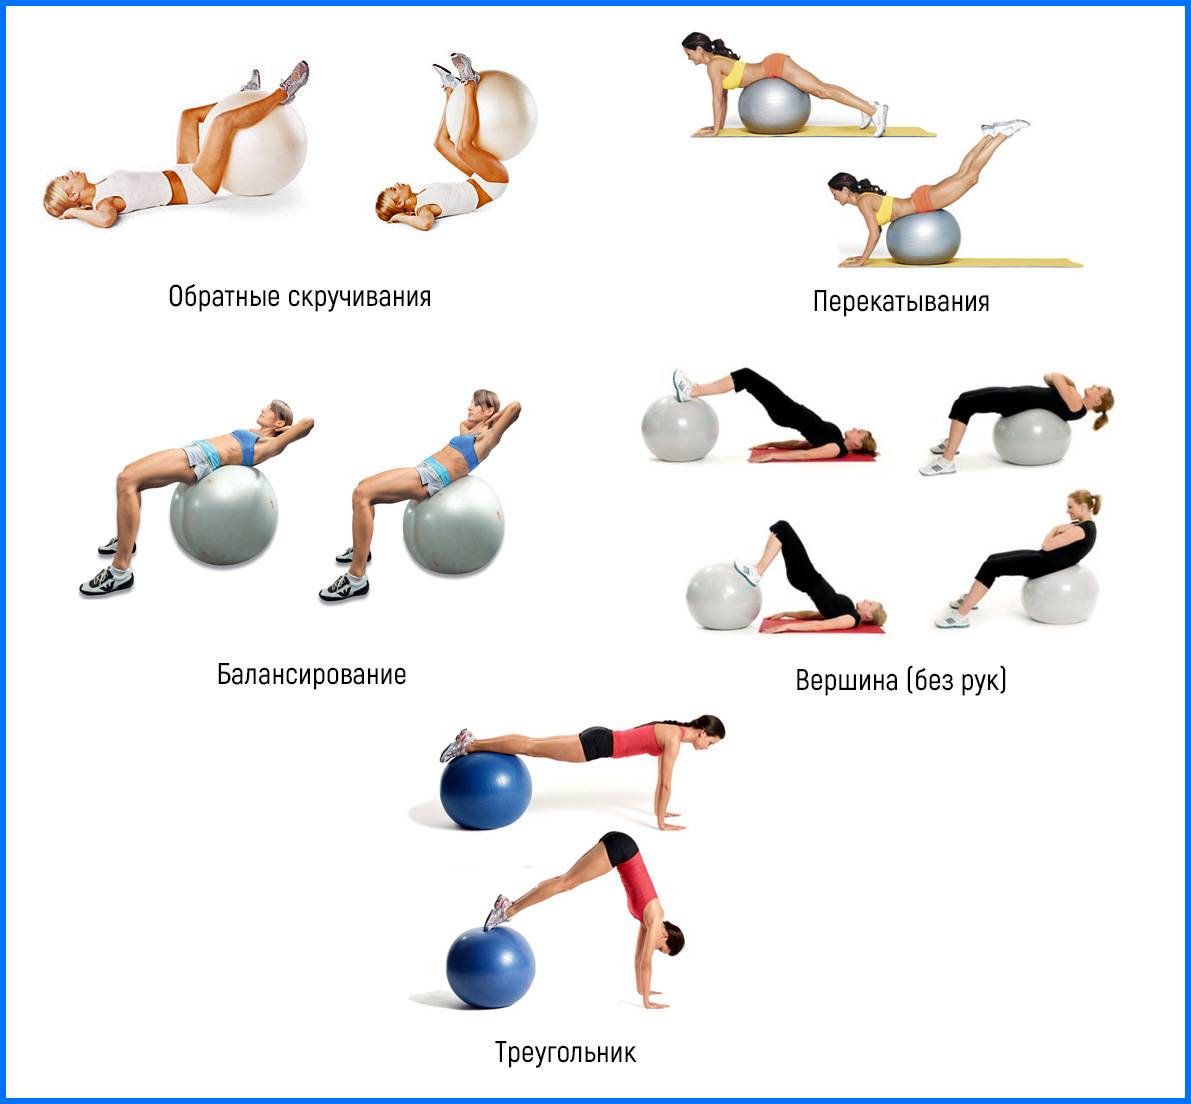 Упражнения с мячом (фитболом) для позвоночника, гимнастический комплекс на шаре для укрепления и расслабления мышц спины и шеи